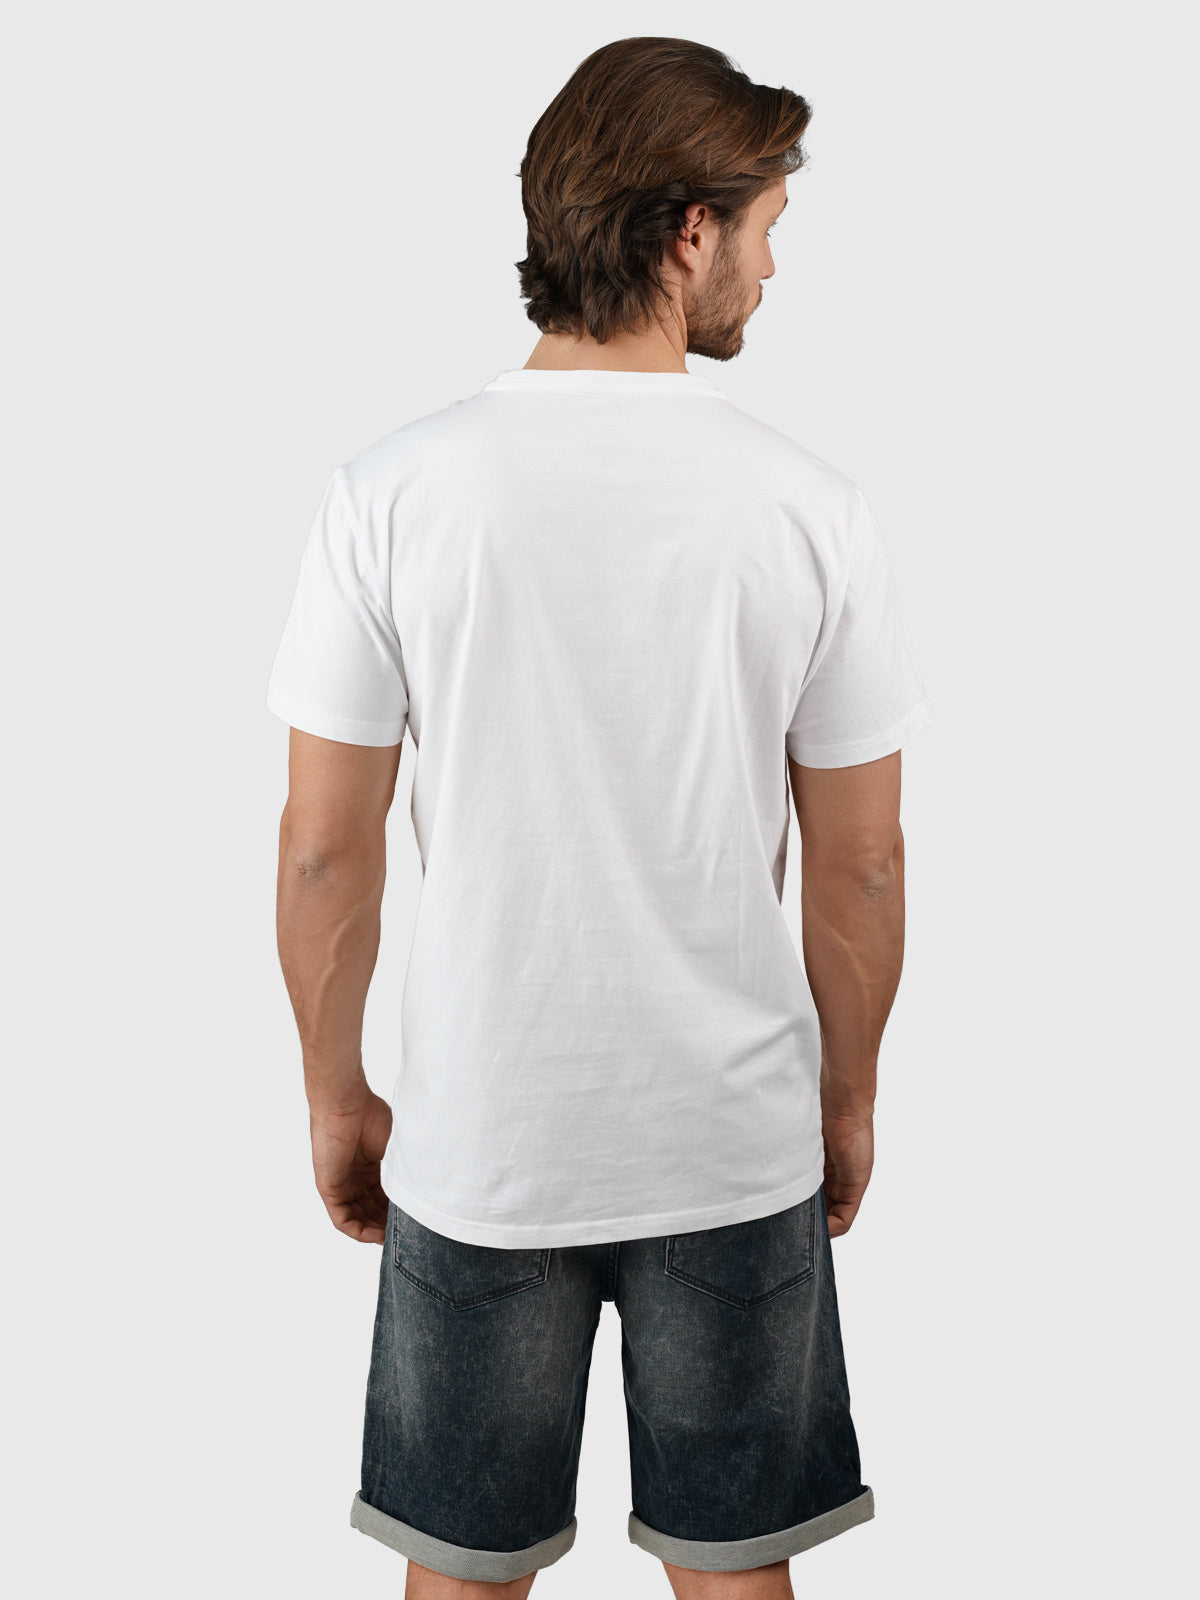 Leeway Herren T-shirt | White